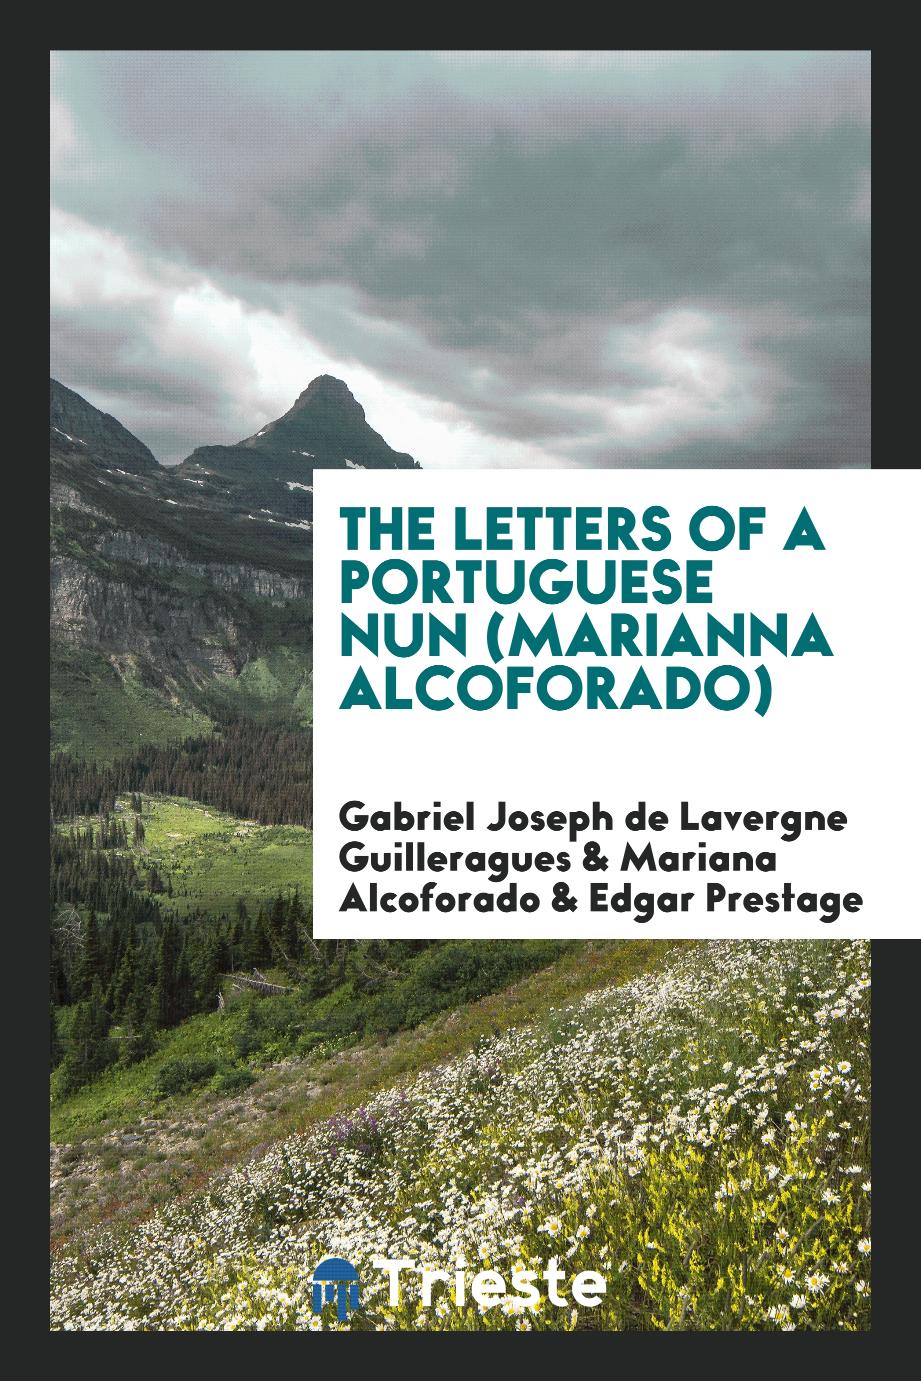 The letters of a Portuguese nun (Marianna Alcoforado)